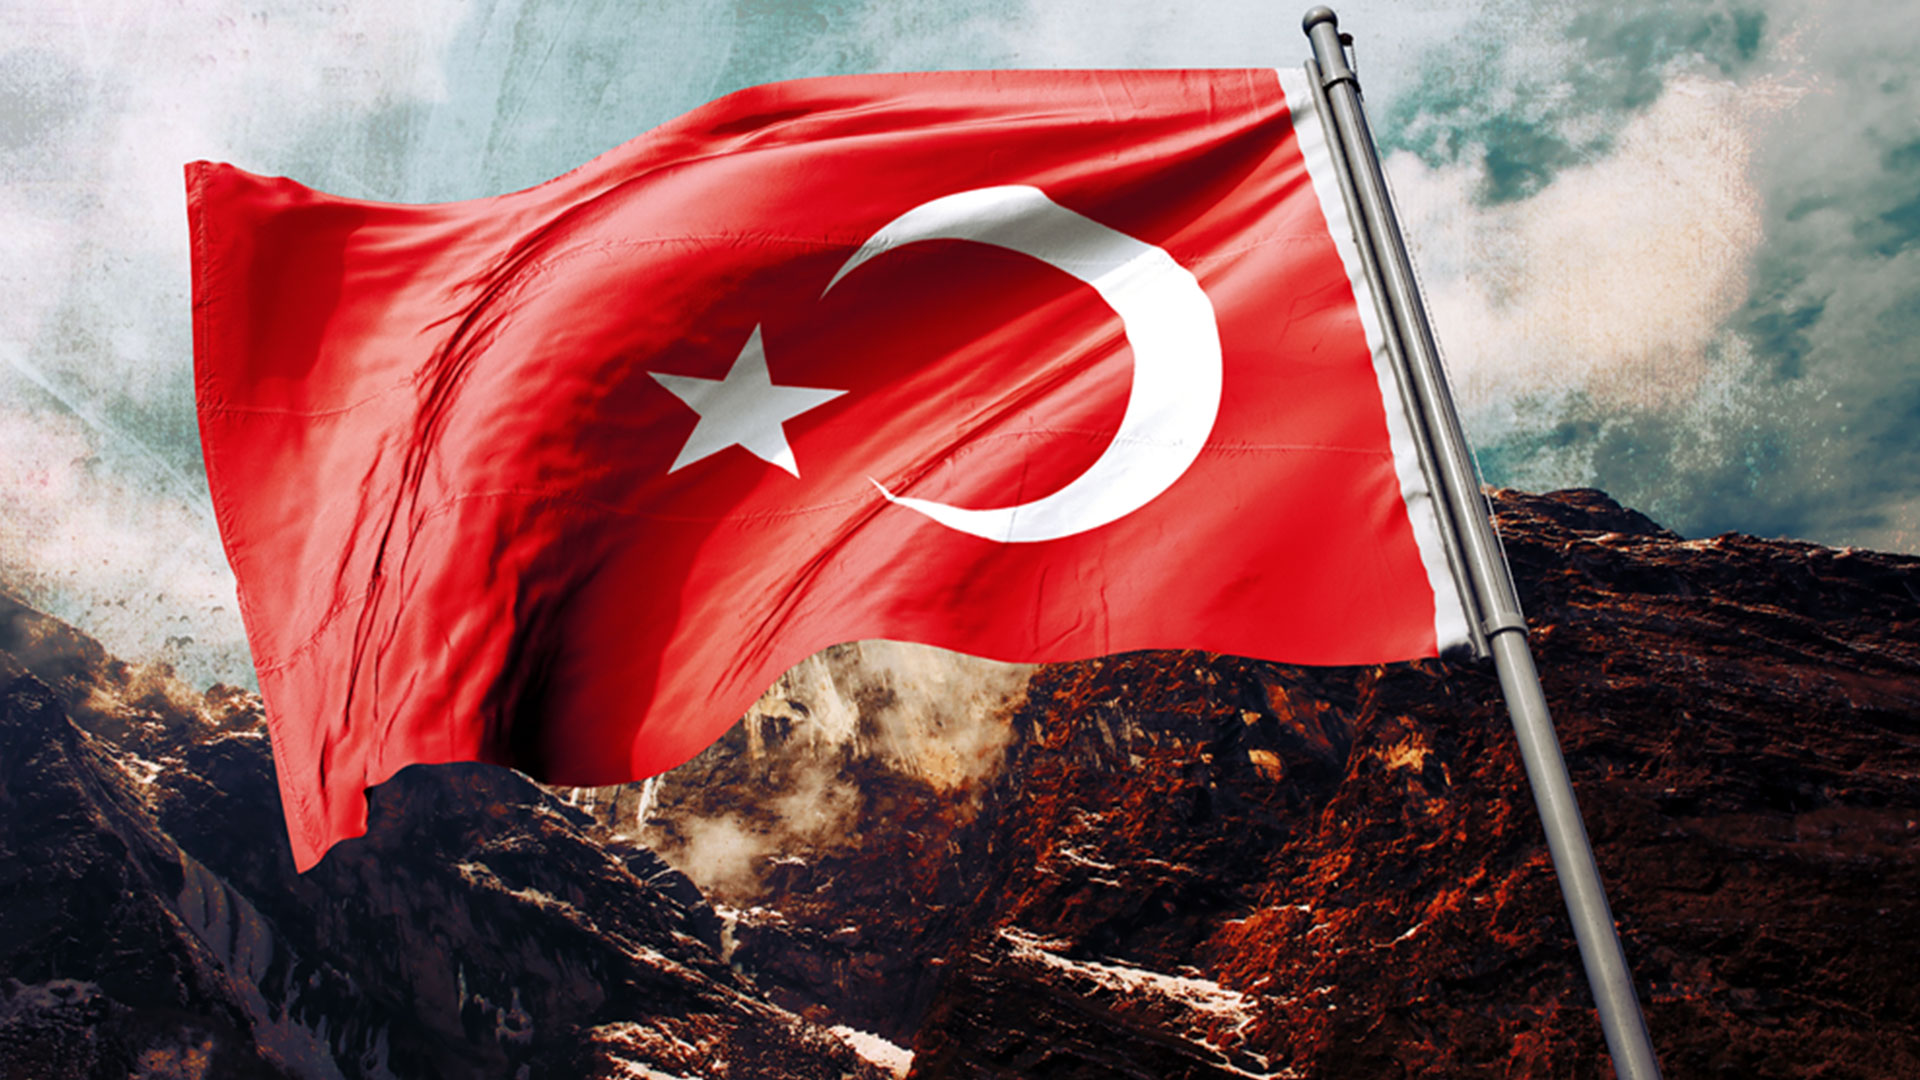 turk bayragi resimleri 2020 1